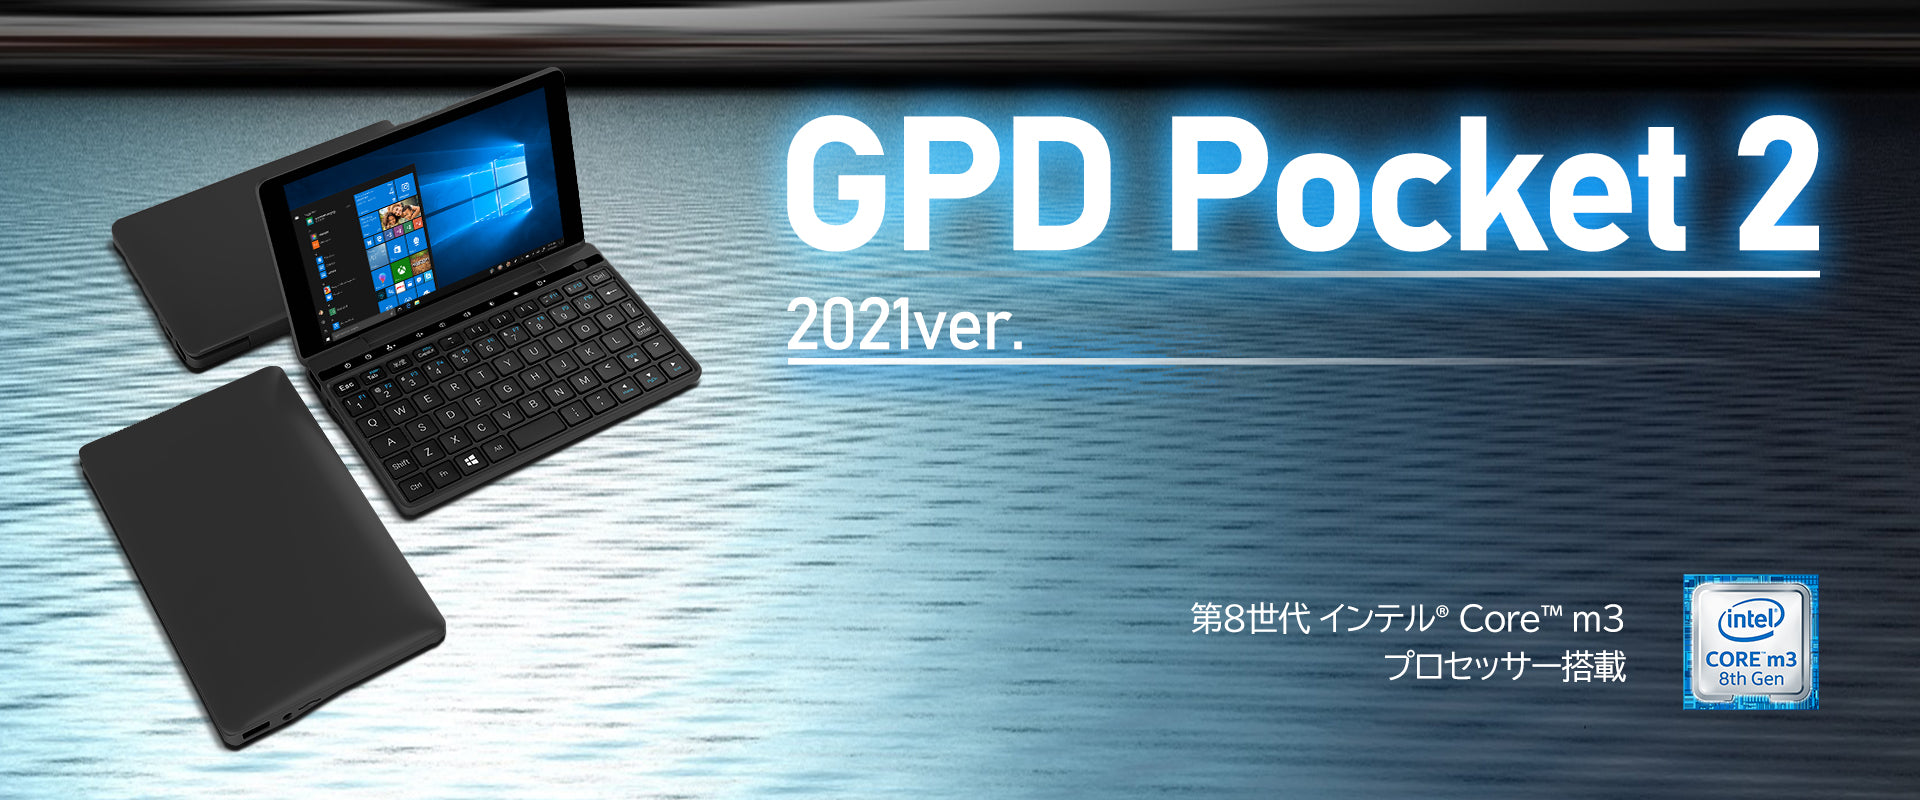 【美品】GPD Pocket2 microsoftOfficeインストール済